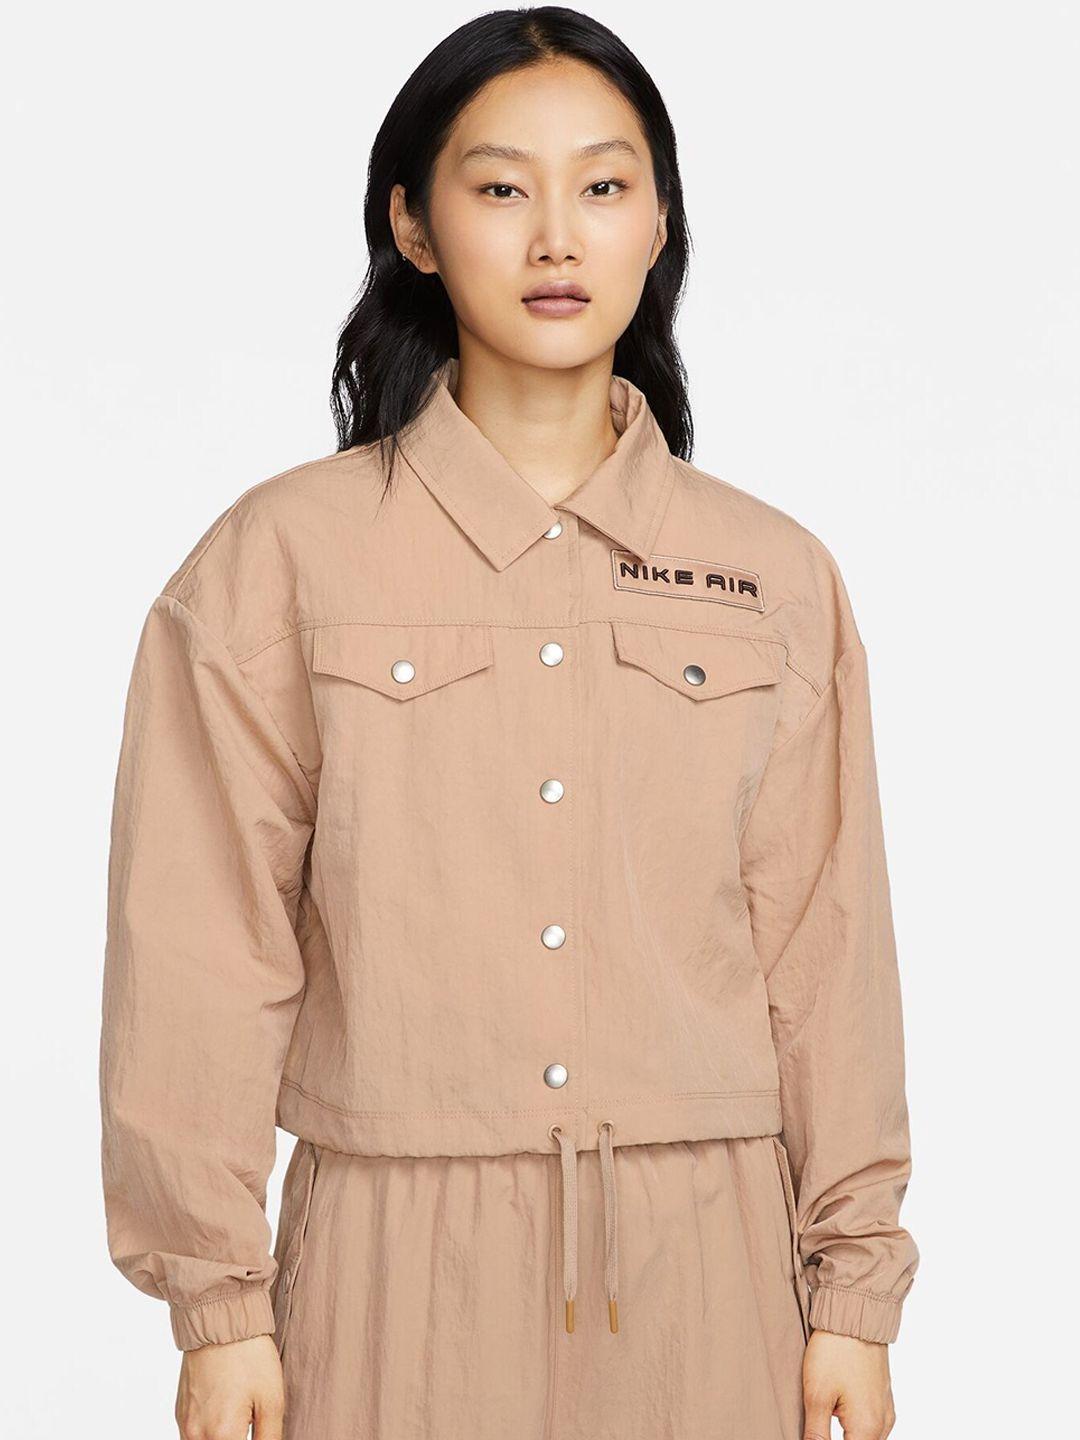 nike air women brand logo printed tailored jacket